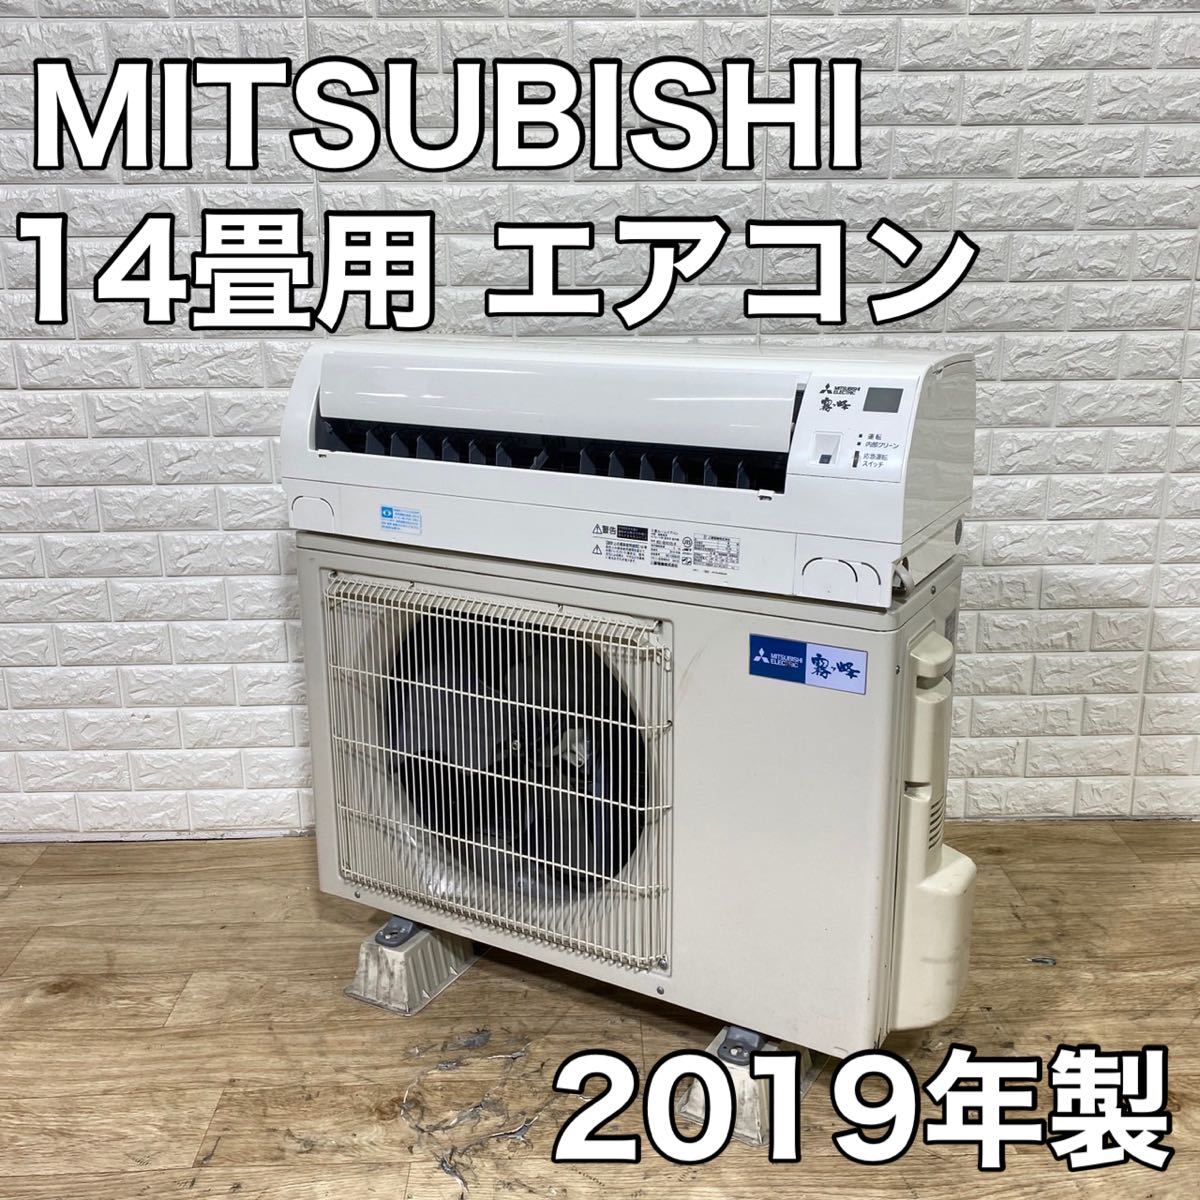 三菱 本物品質の 新しく着き MITSUBISHI ルームエアコン 14畳 2019年 家電 MSZ-GE4019S-W